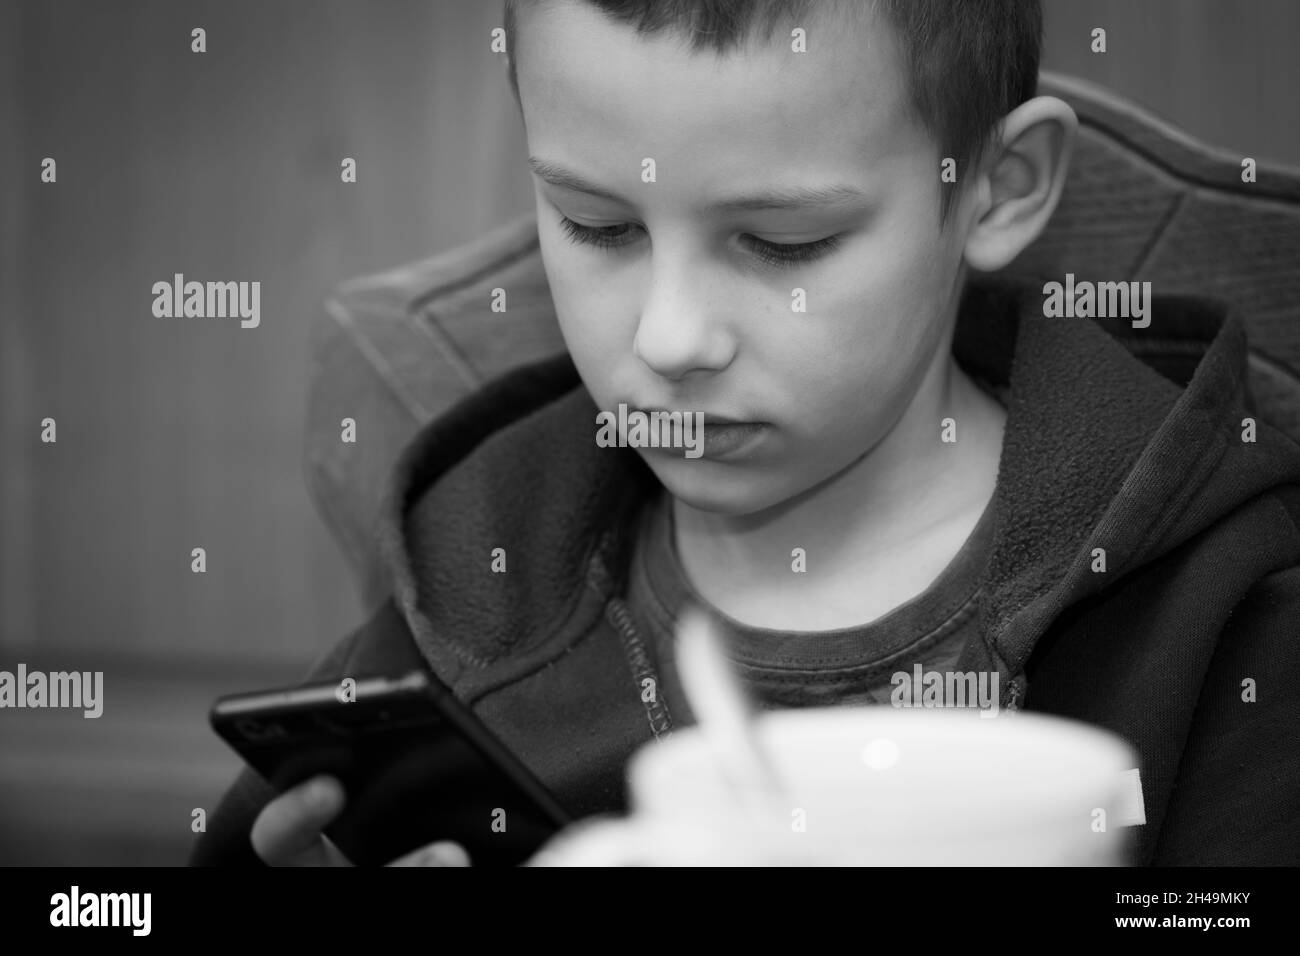 Bébé garçon de sept ans joue sur smartphone à la table, image en noir et blanc Banque D'Images